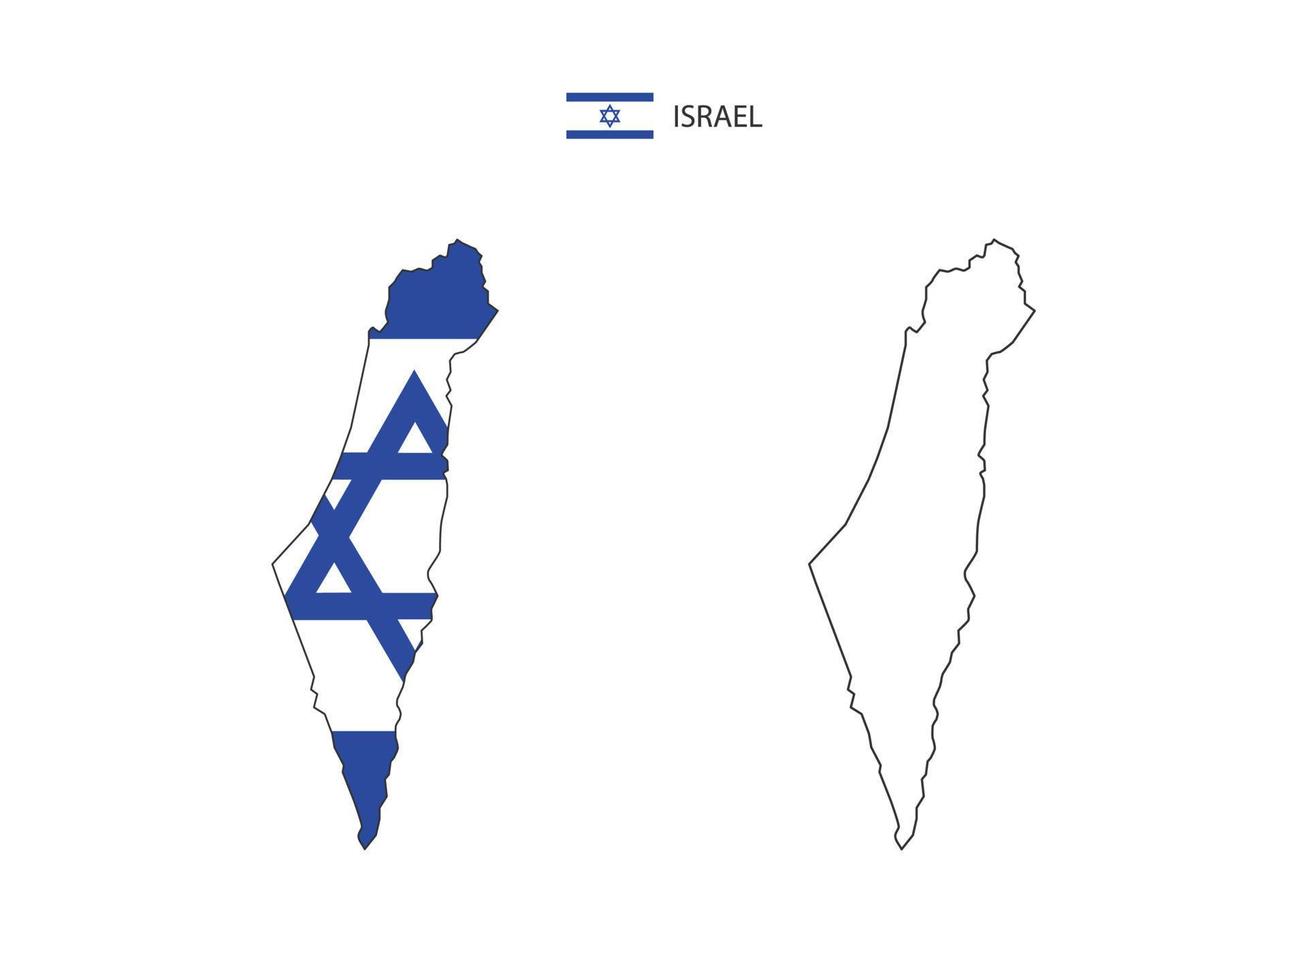 vetor da cidade do mapa de israel dividido pelo estilo de simplicidade do contorno. tem 2 versões, versão de linha fina preta e cor da versão da bandeira do país. ambos os mapas estavam no fundo branco.